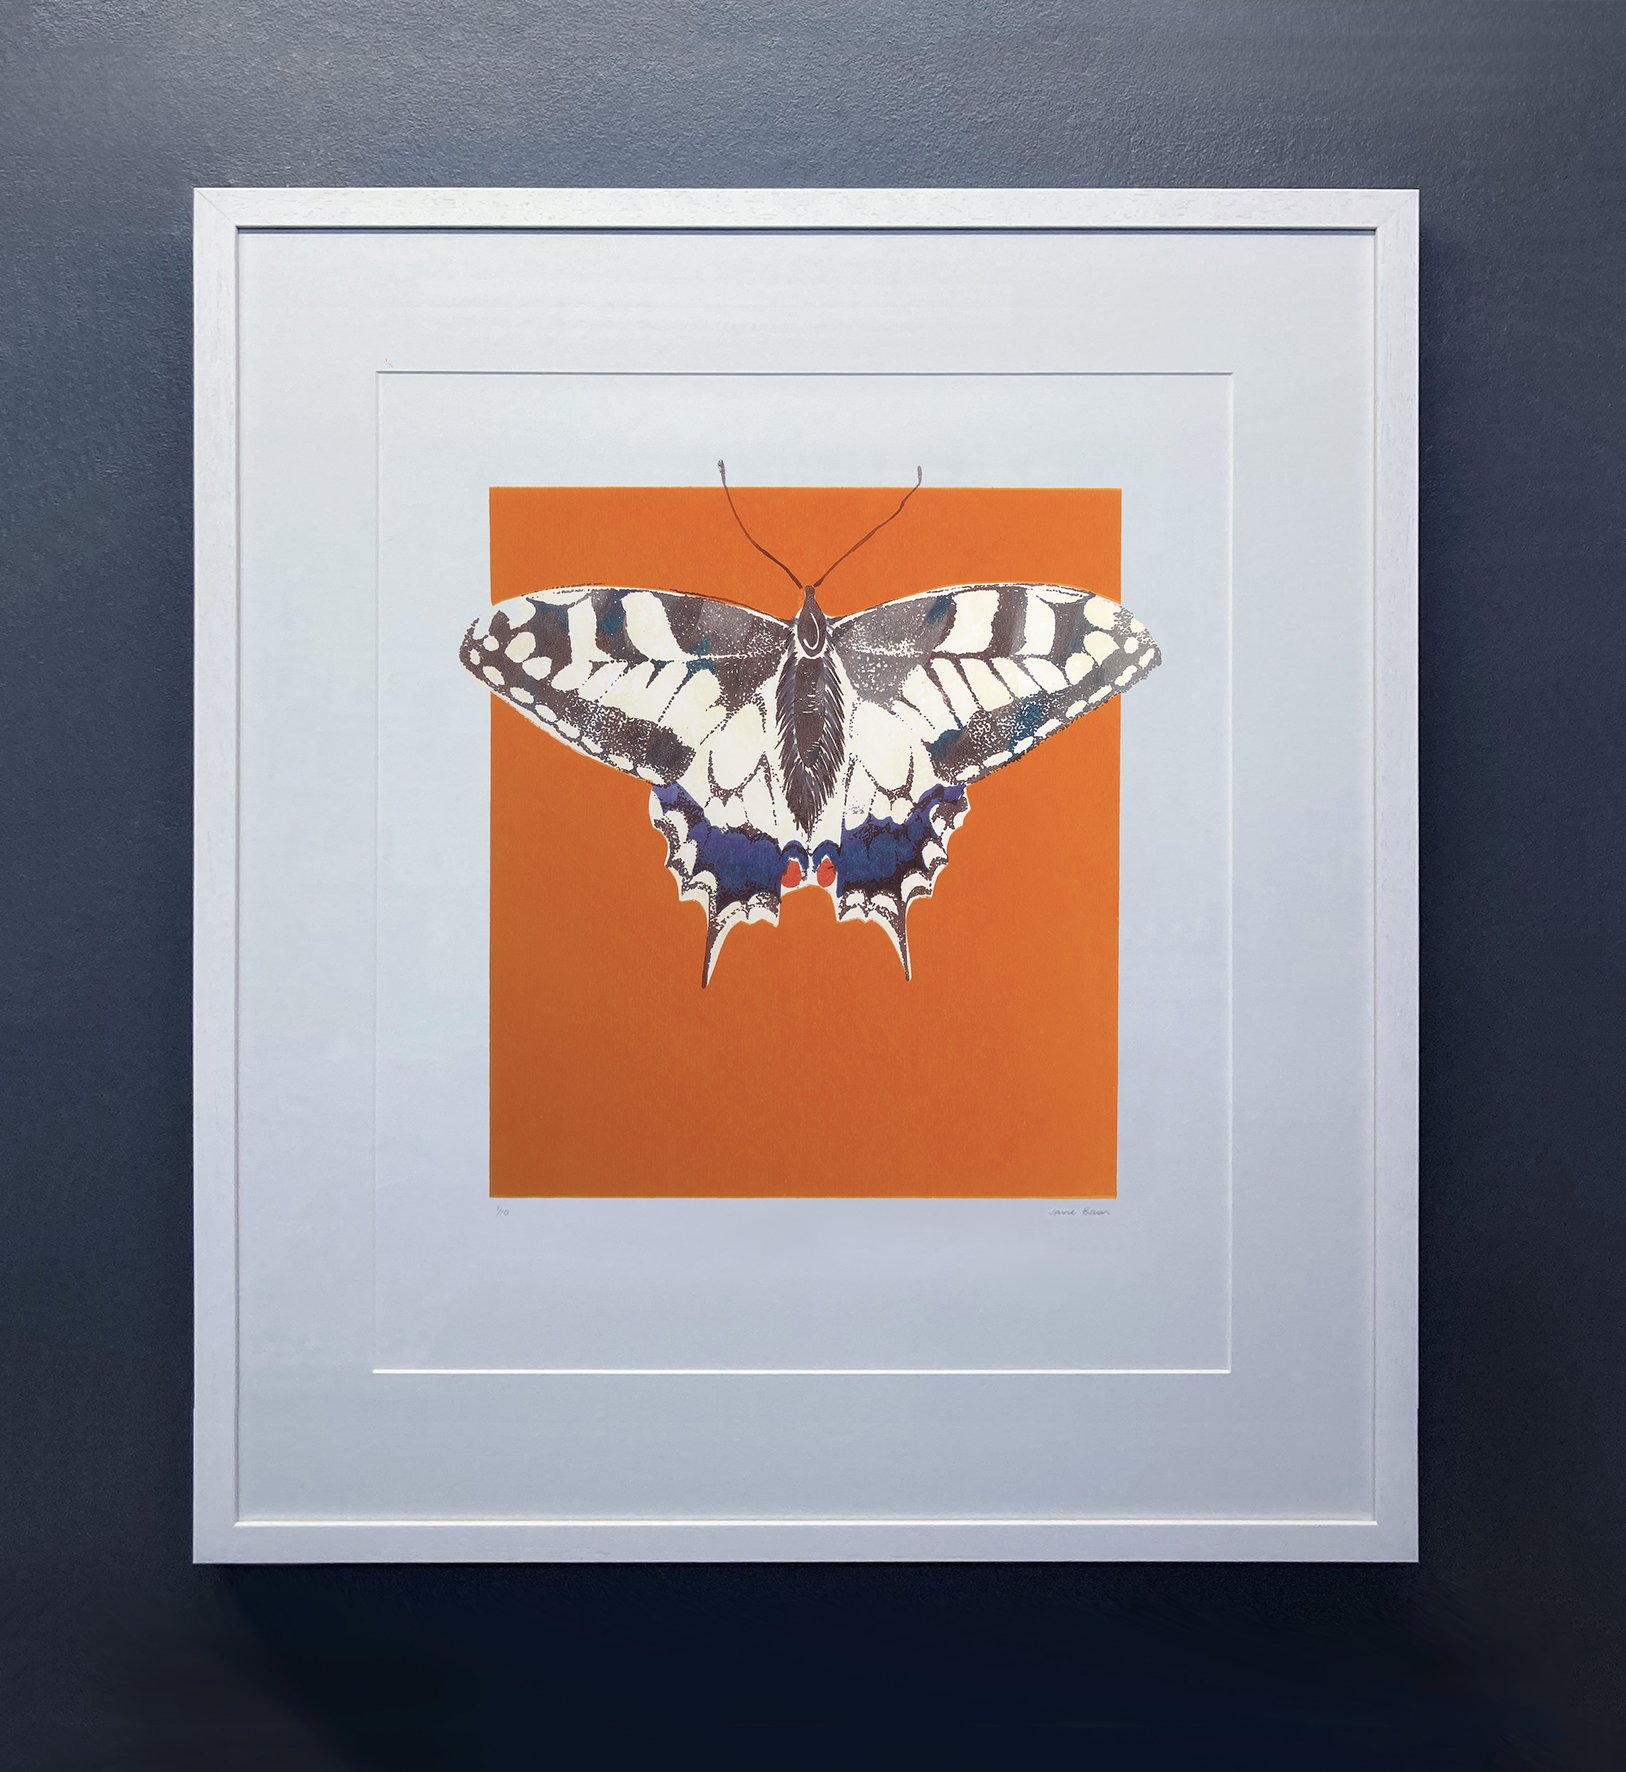   Swallowtail  Silkscreen print Unframed paper size: 297 x 420mm 